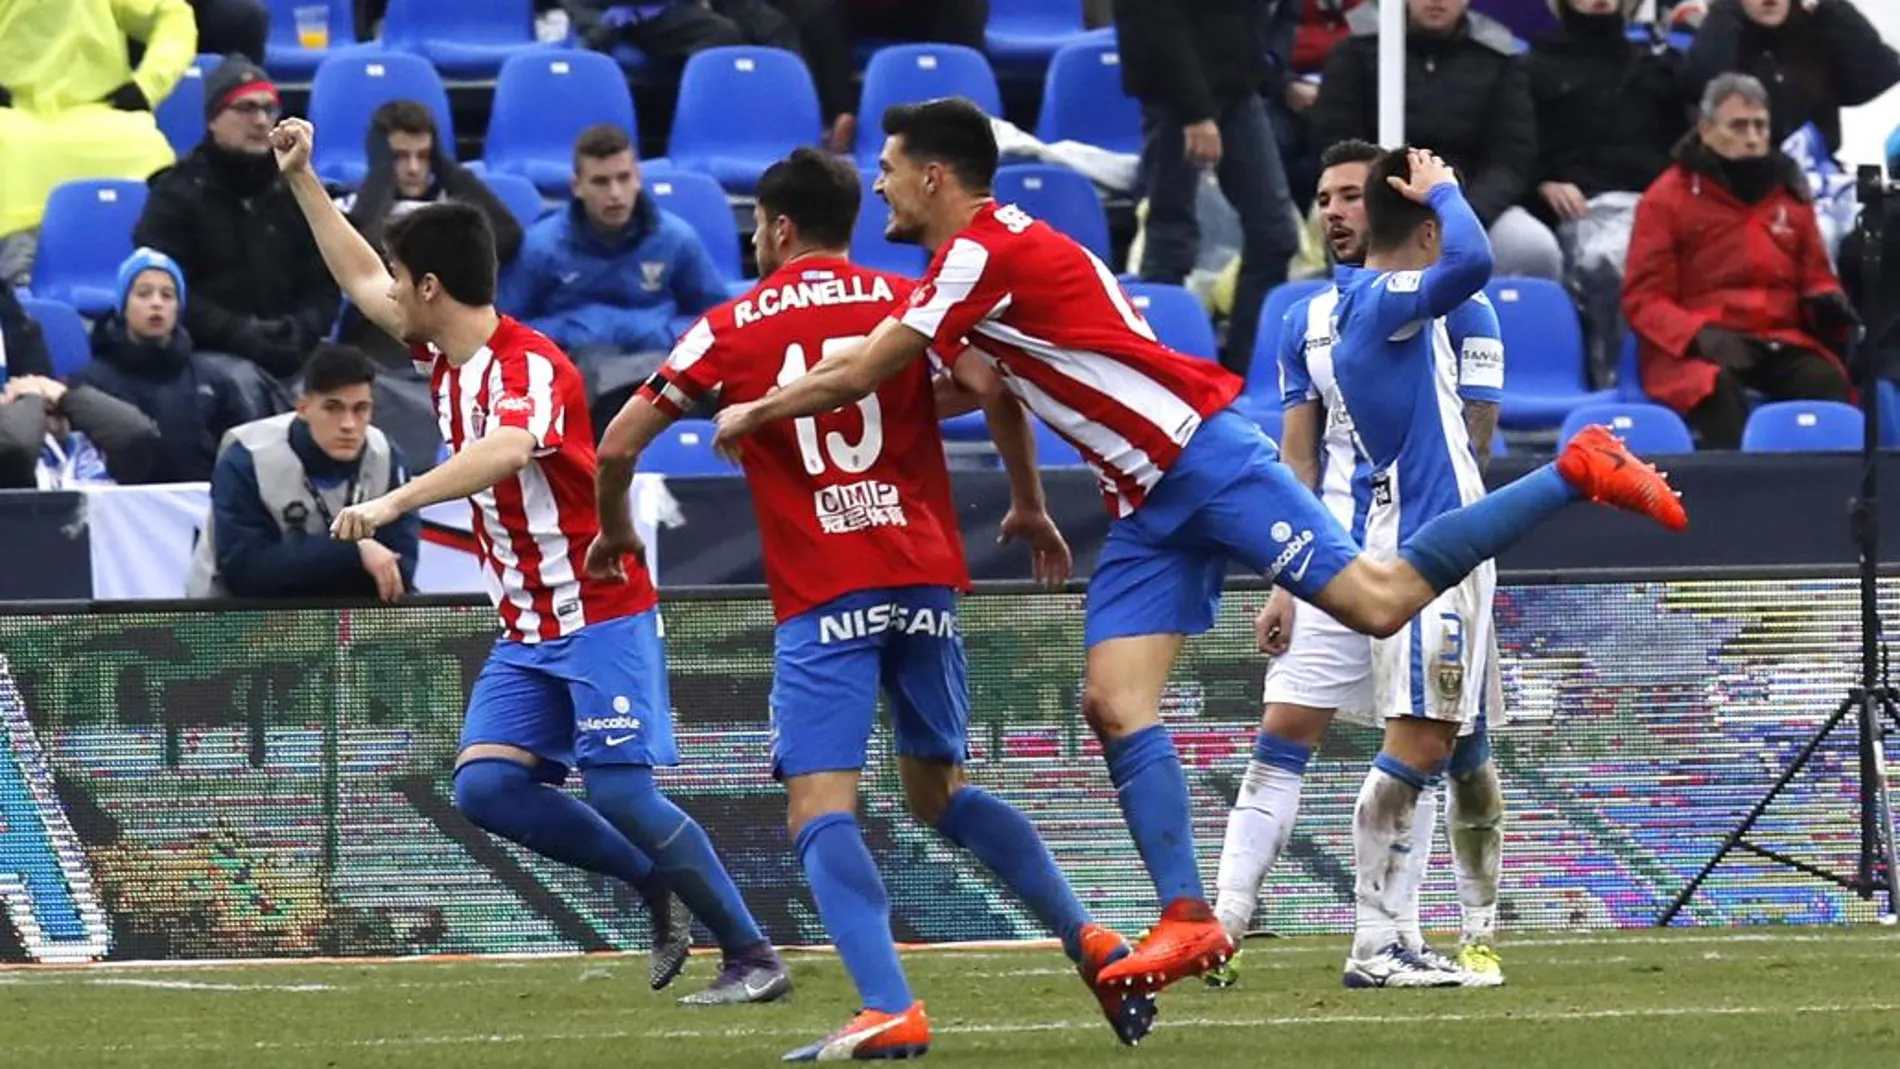 El jugador del Sporting de Gijón Roberto Canella celebra junto a sus compañeros su gol marcado al CD Legané